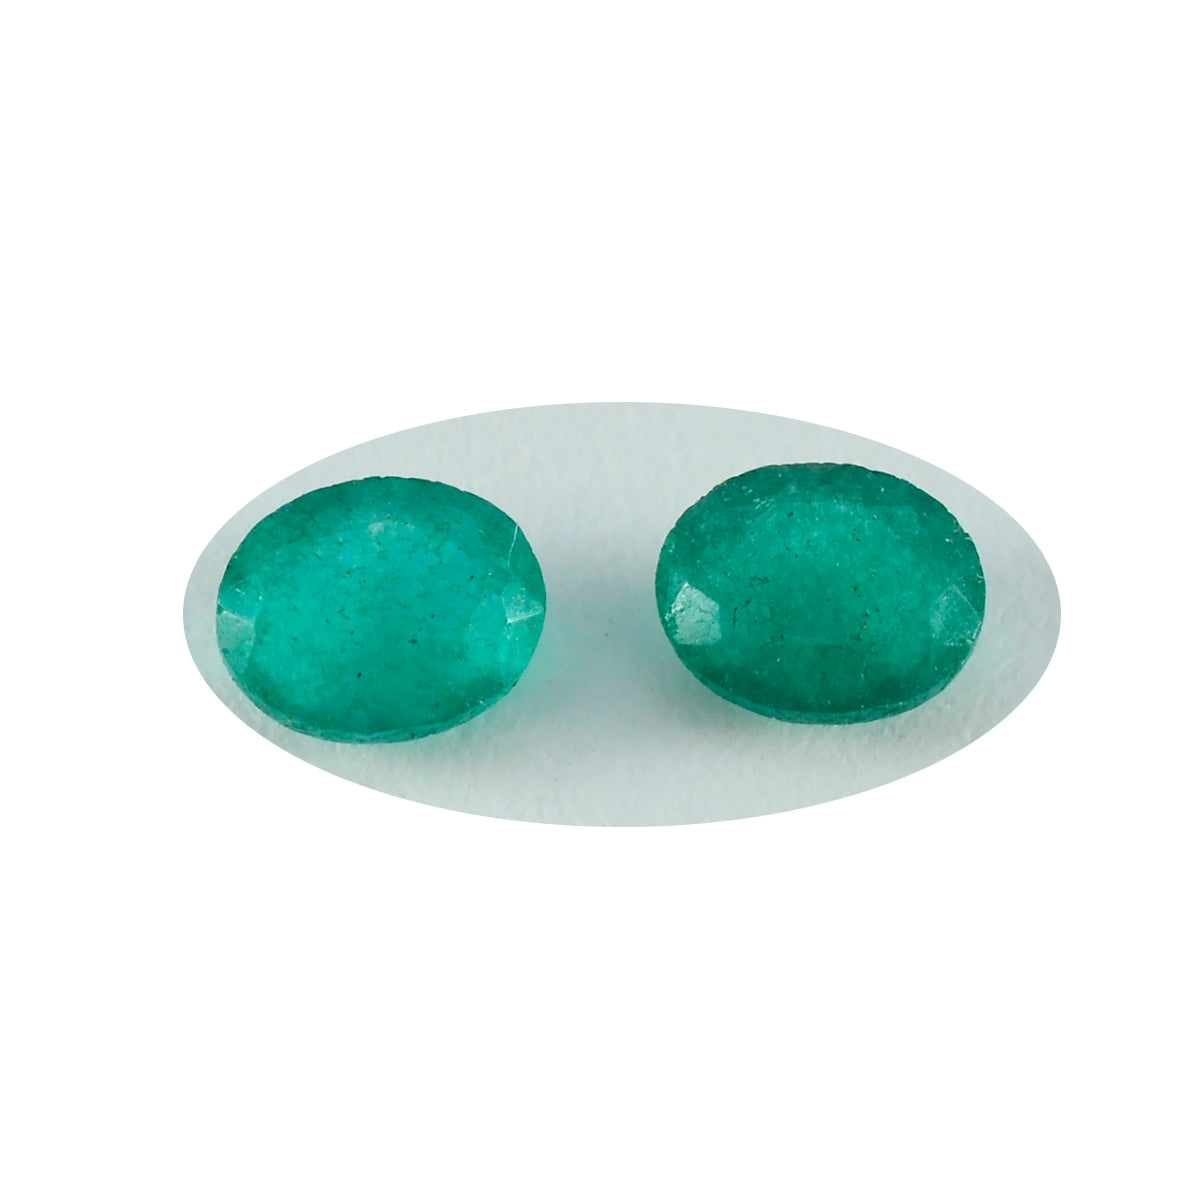 riyogems 1pc ナチュラル グリーン ジャスパー ファセット 9x11 mm 楕円形の素晴らしい品質の宝石